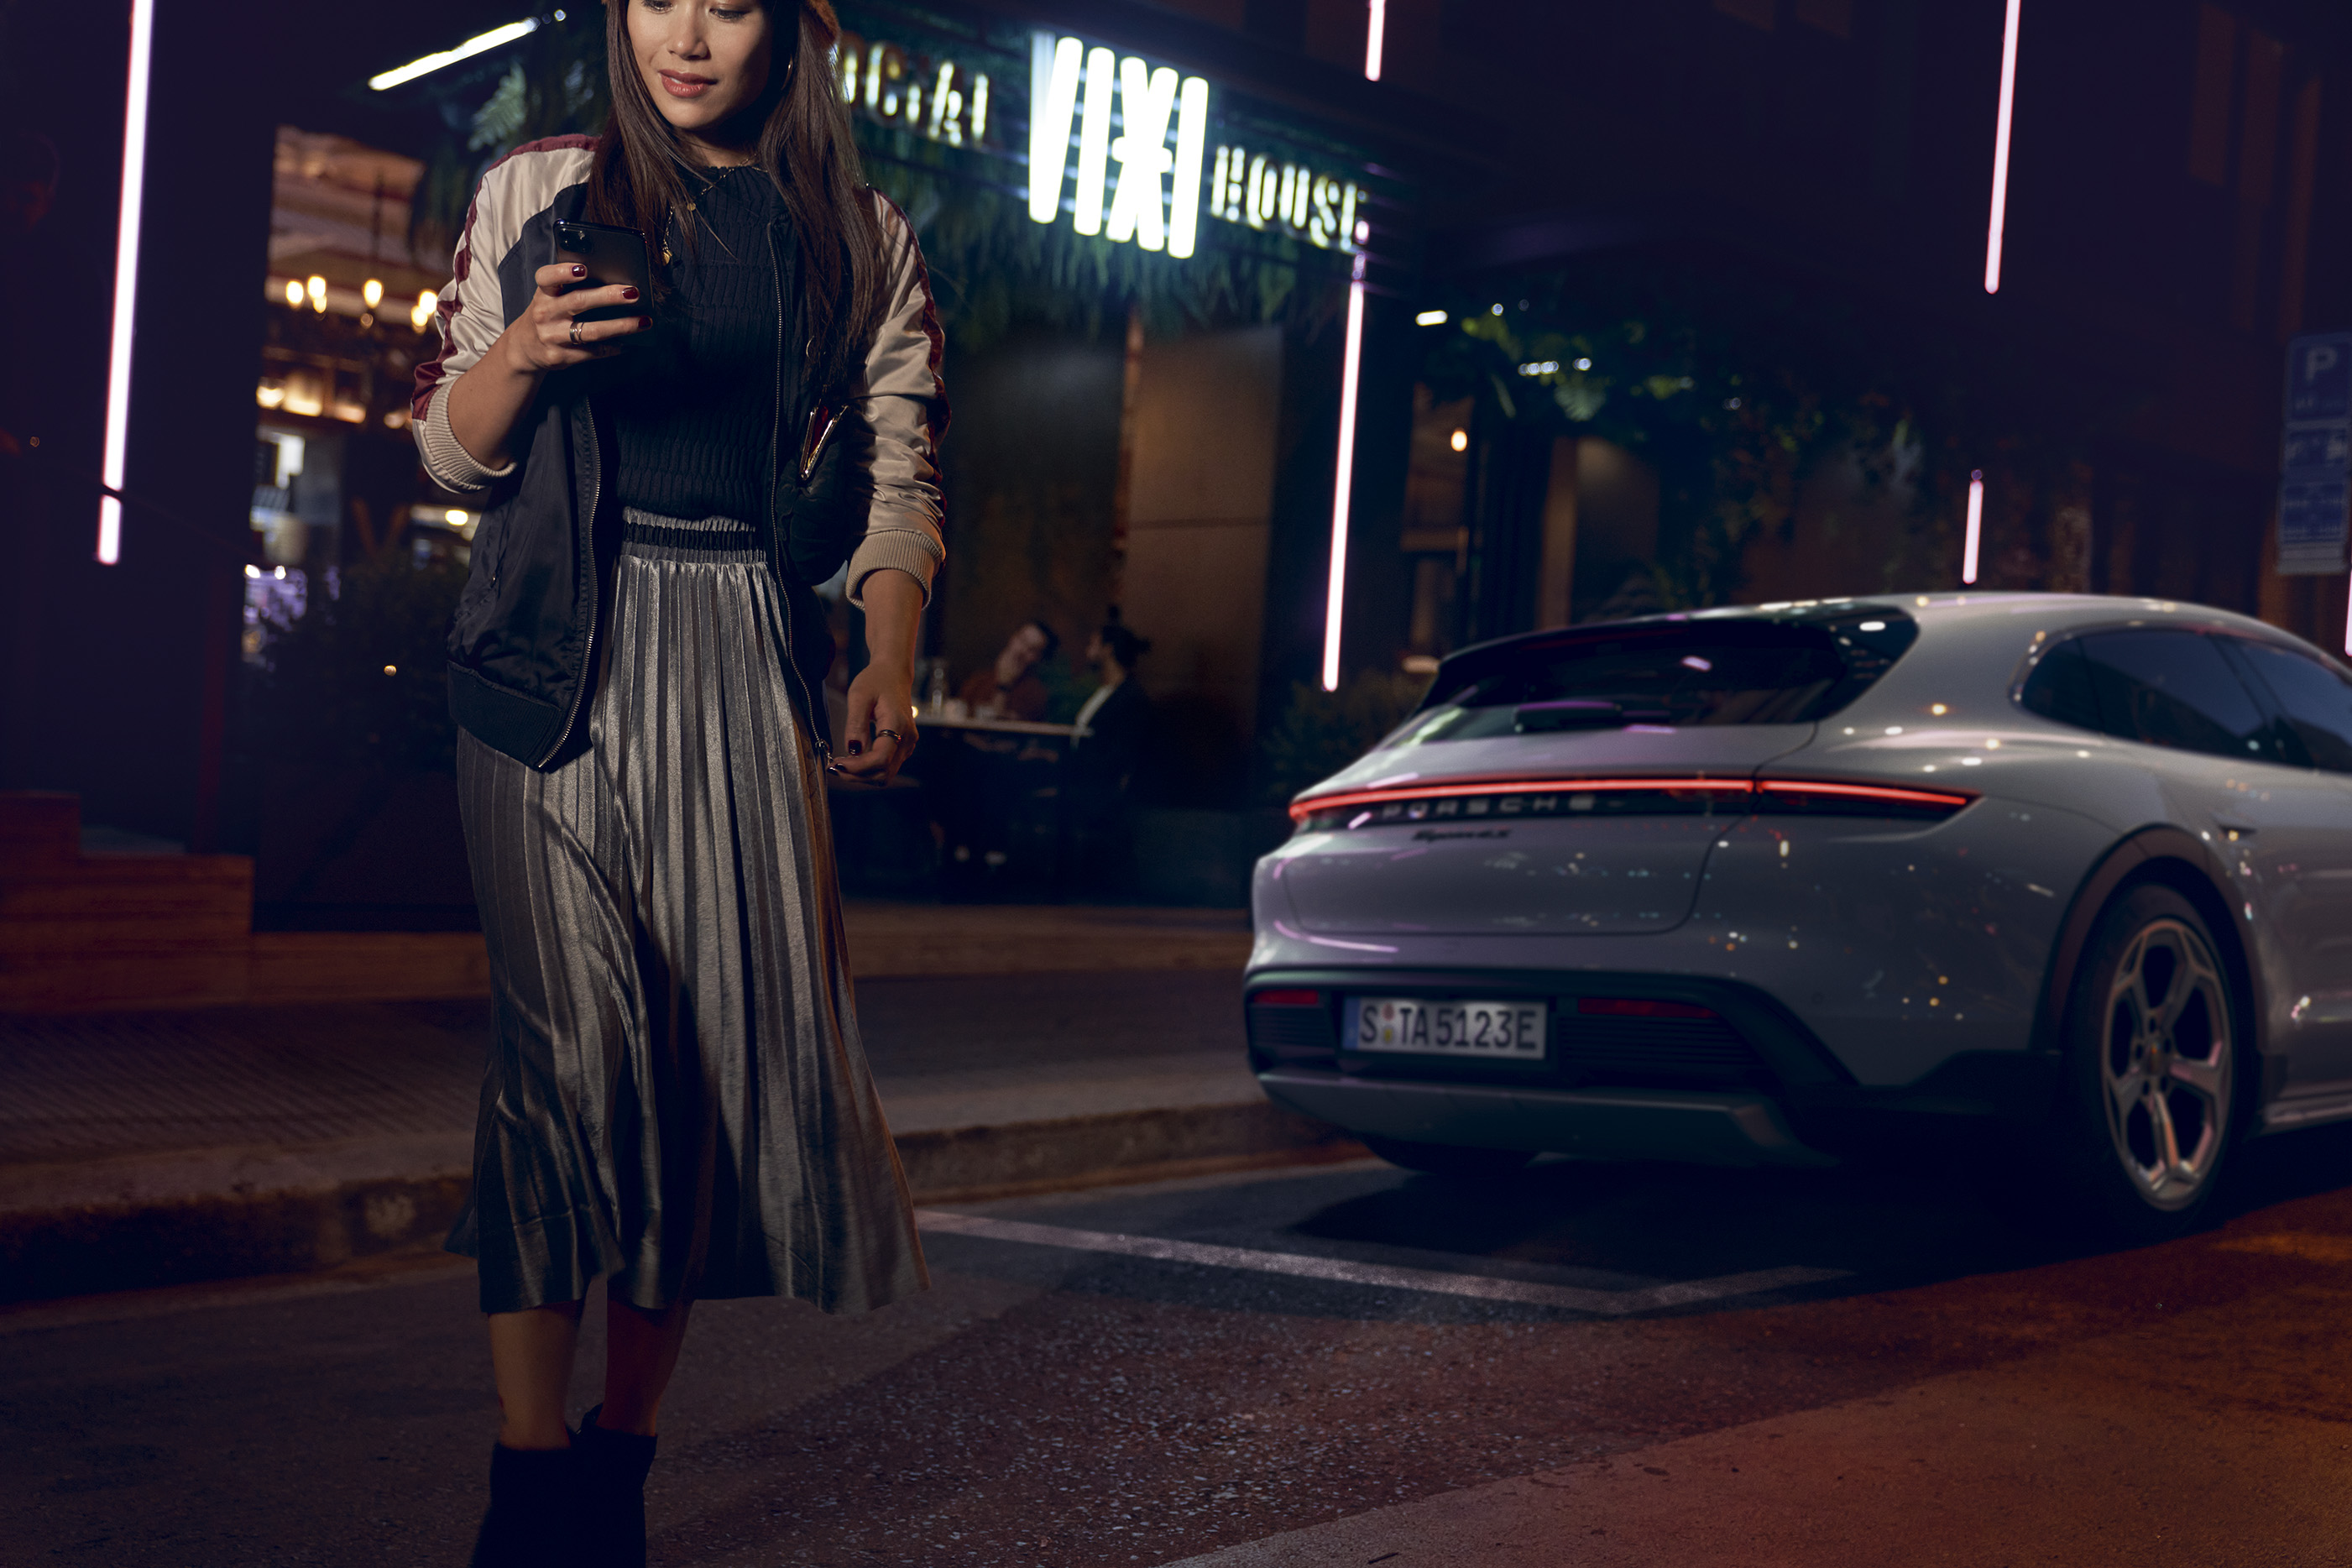 Woman walking across street at night, Porsche car behind